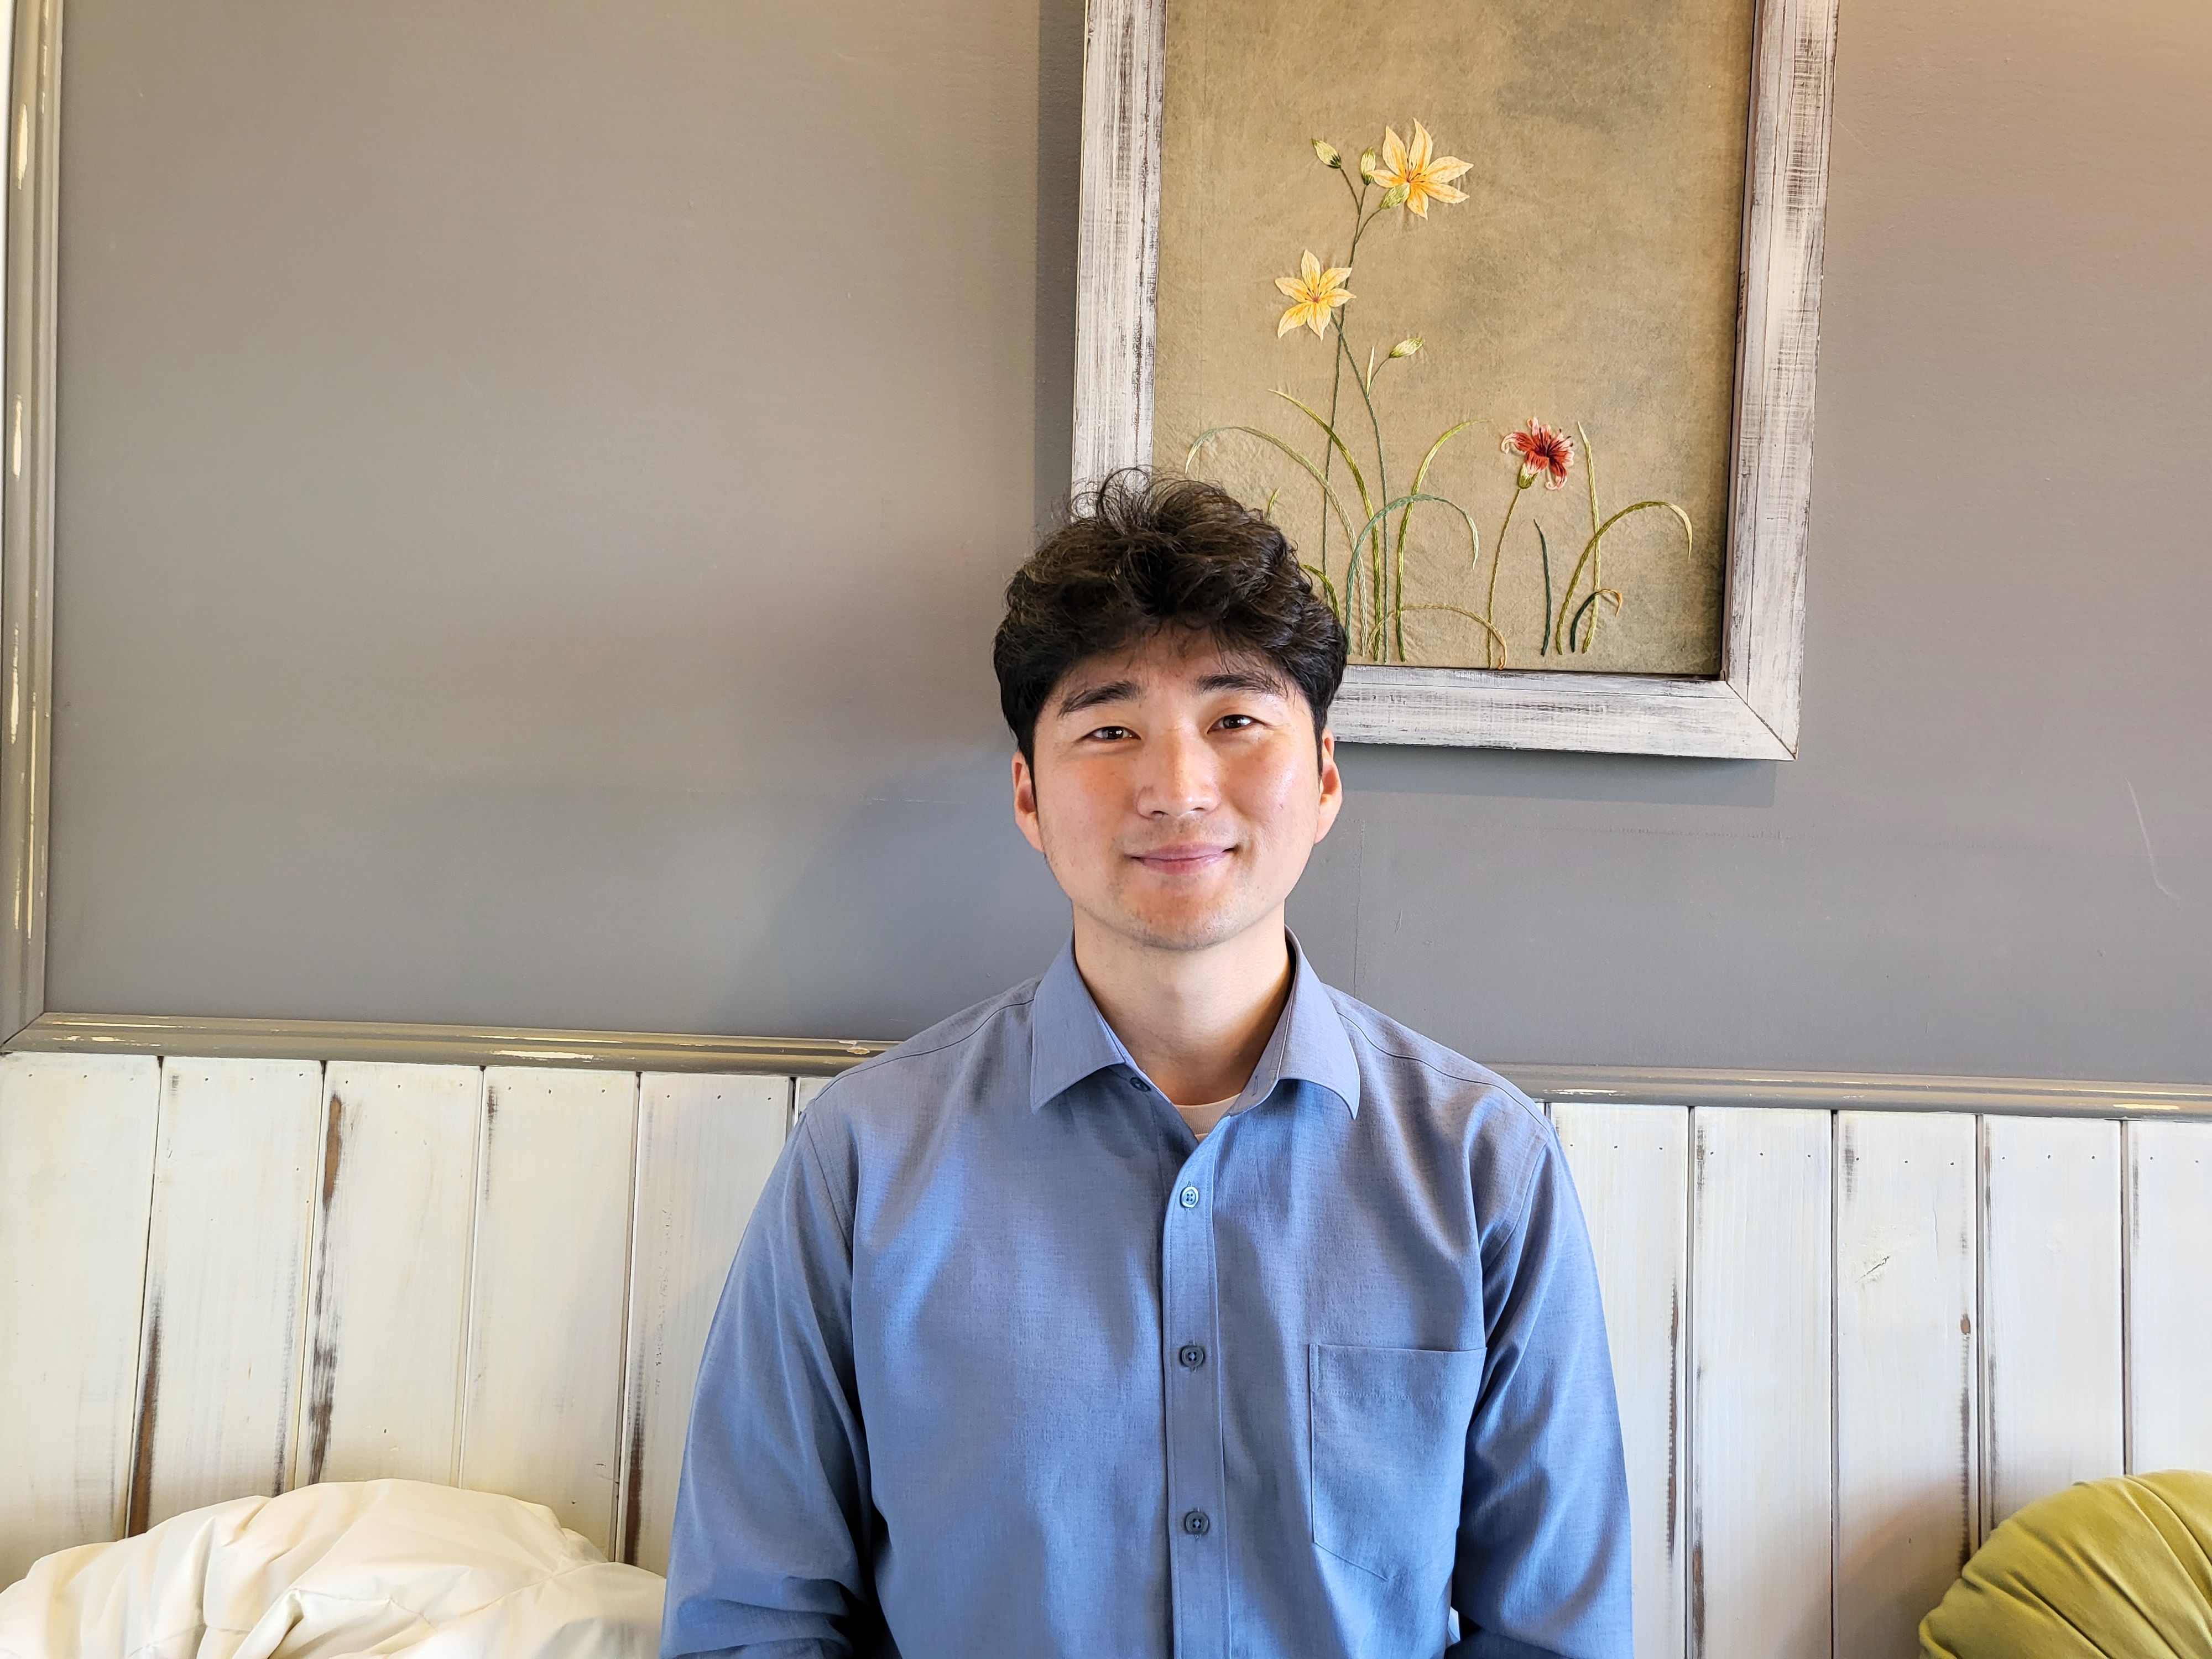 제43회 차세대농어업경영인대상에서 수산 부문 대통령상을 수상한 윤태형씨가 전북 고창군에 있는 한 카페에서 서울신문과 인터뷰를 하고 있다.